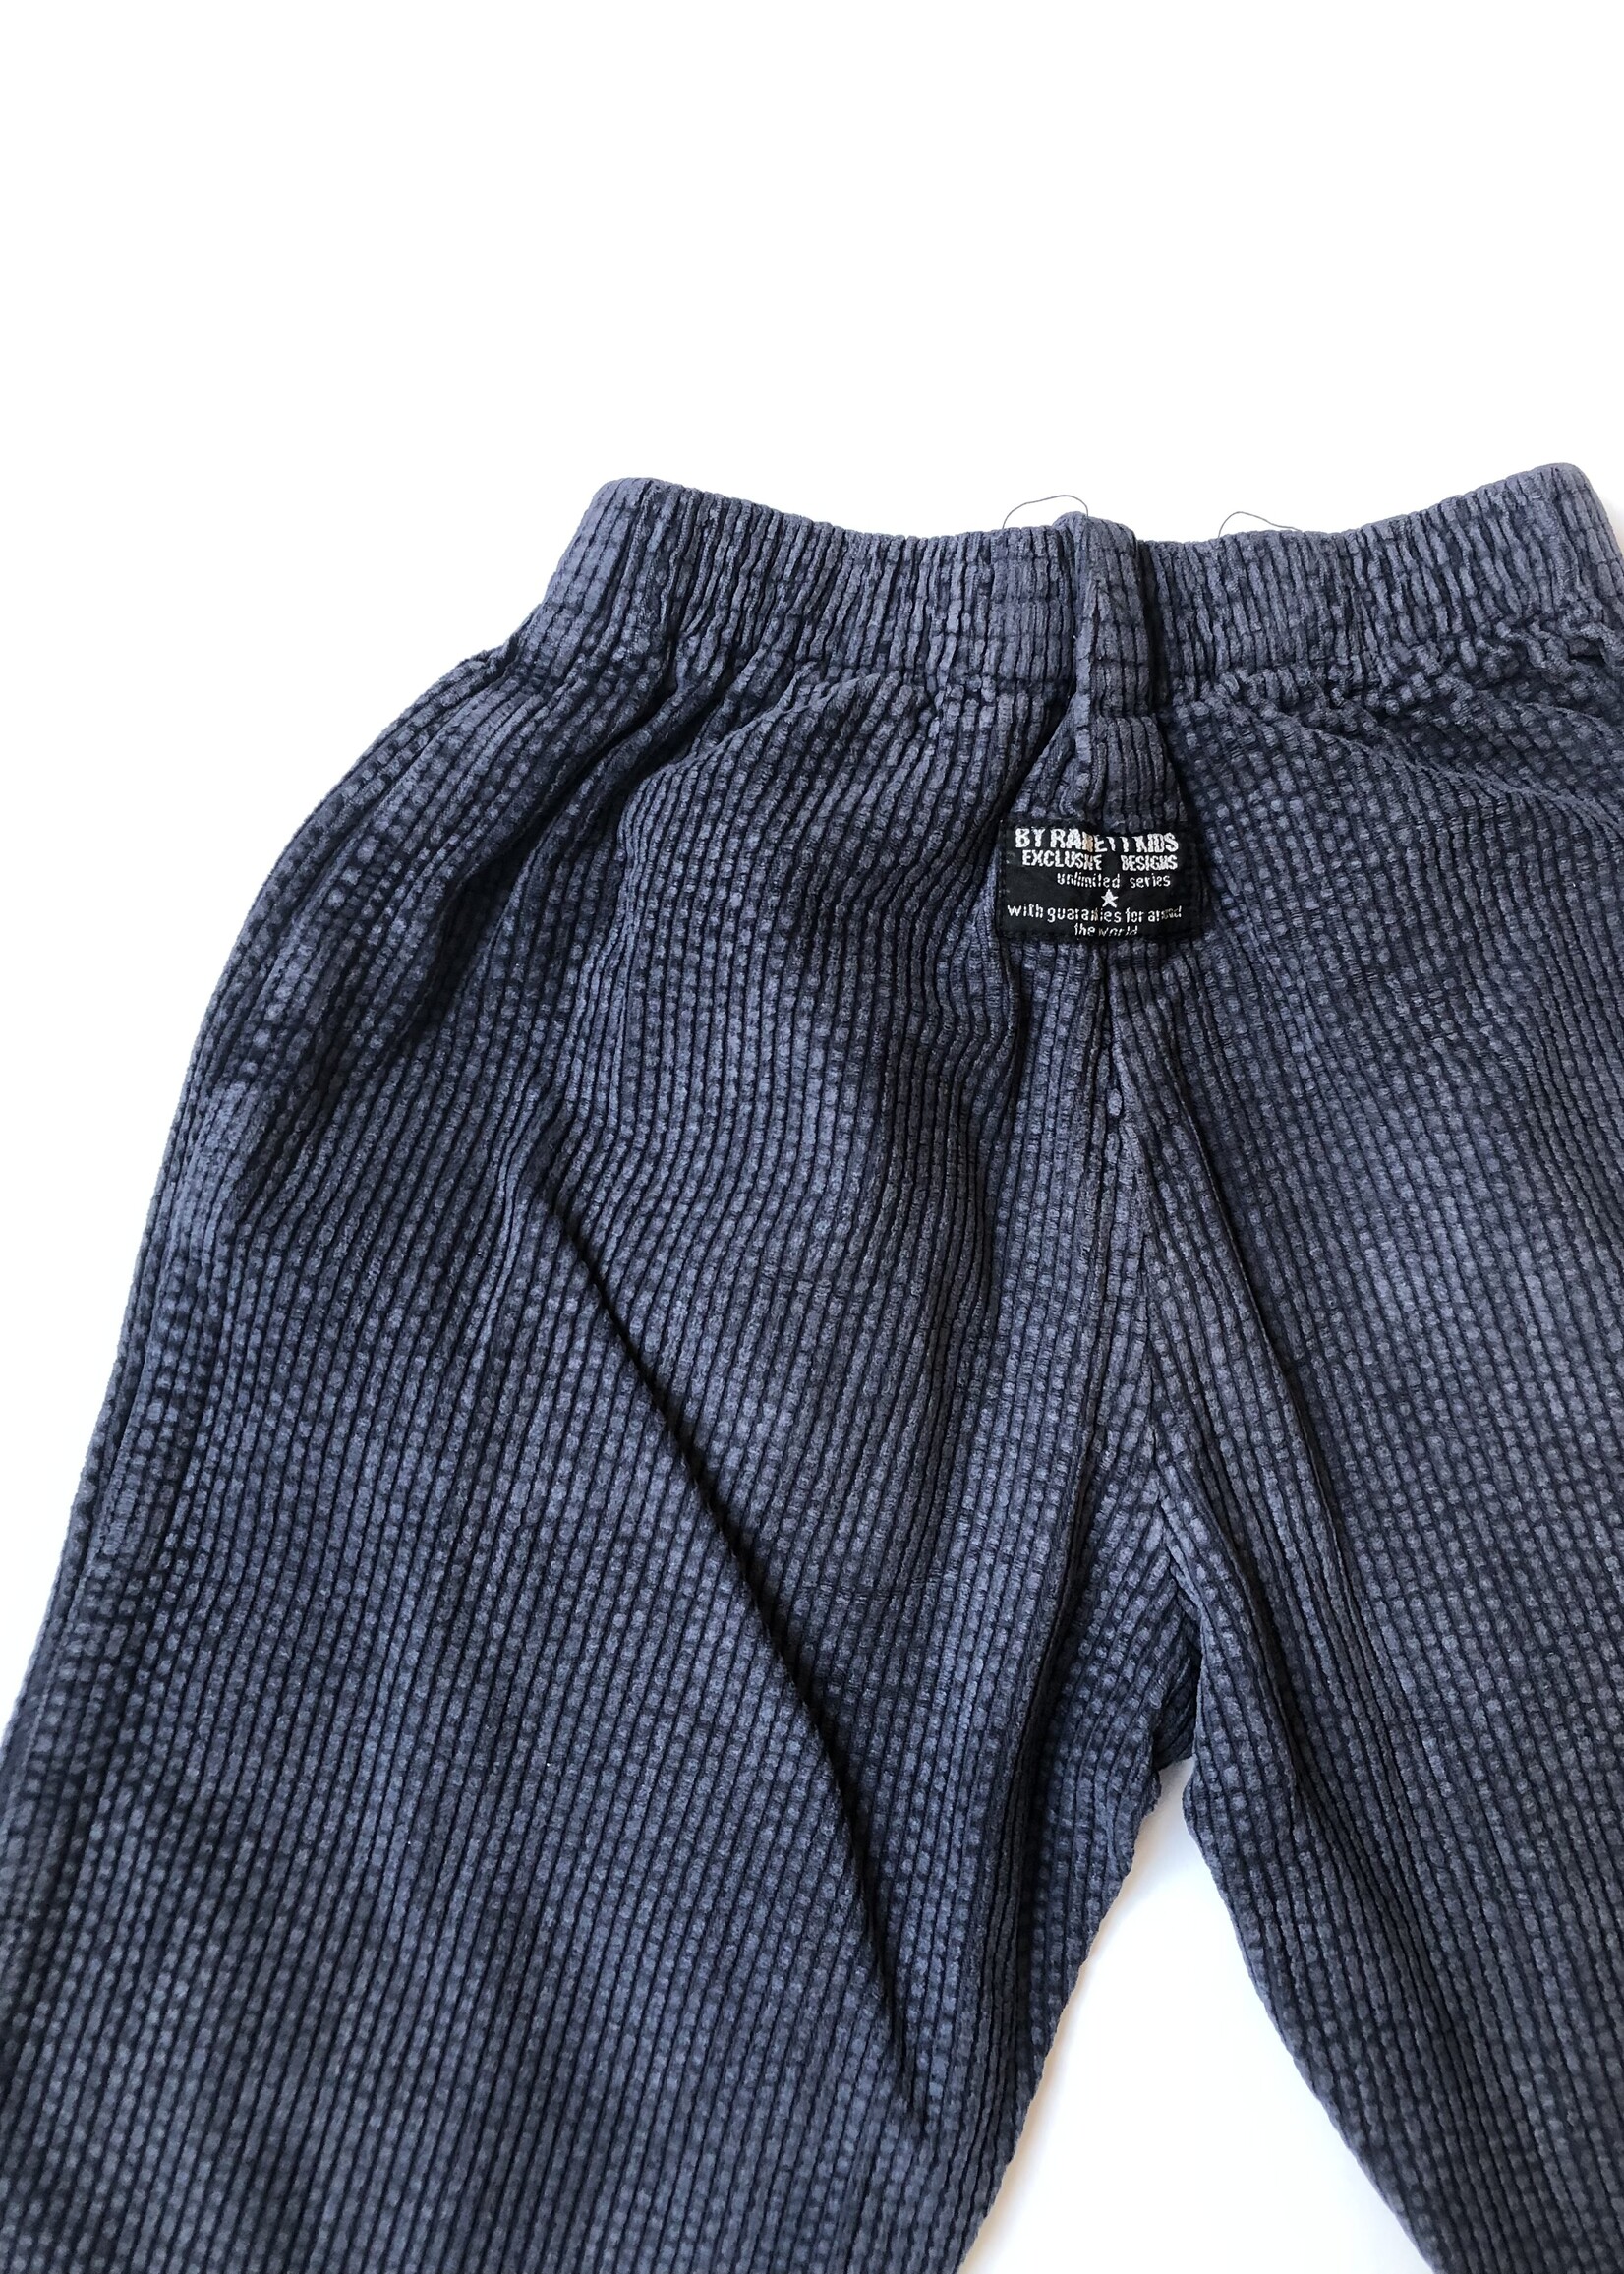 Vintage Dark blue corduroy puffy pants 4y